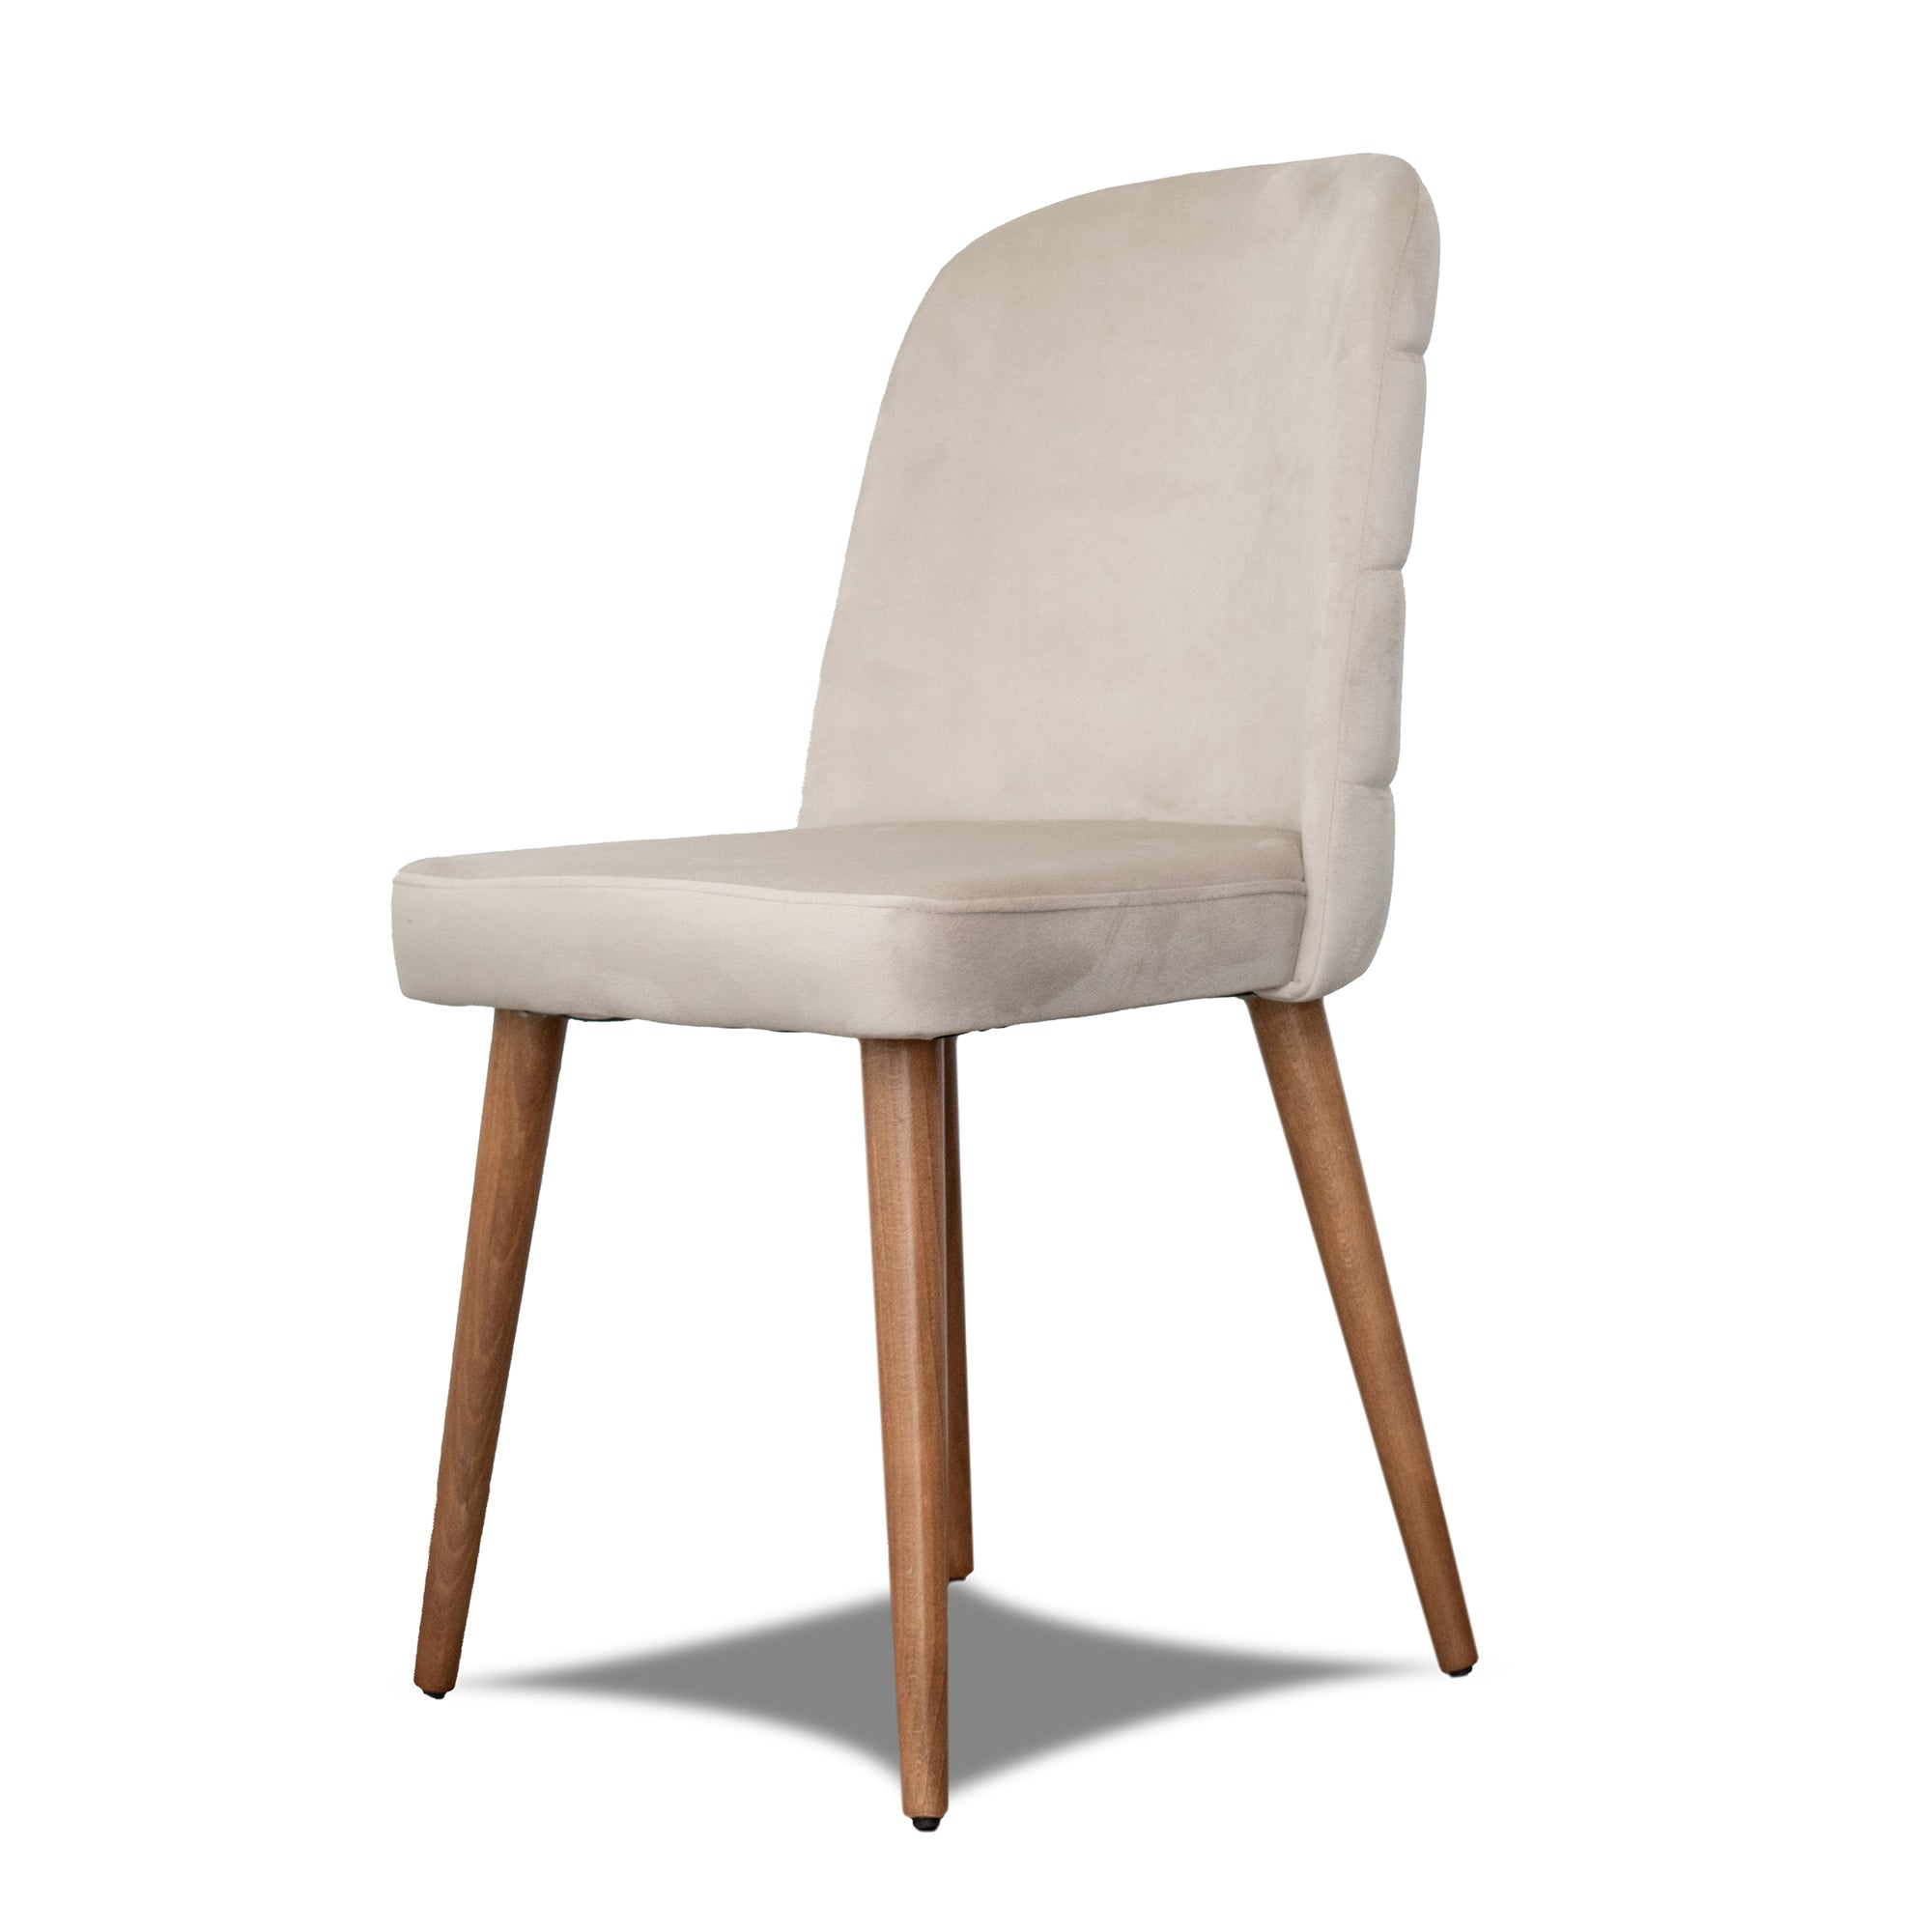 Joymodern Furniture Chair – Dining Taylor of Upholstered (Set 2) Velvet